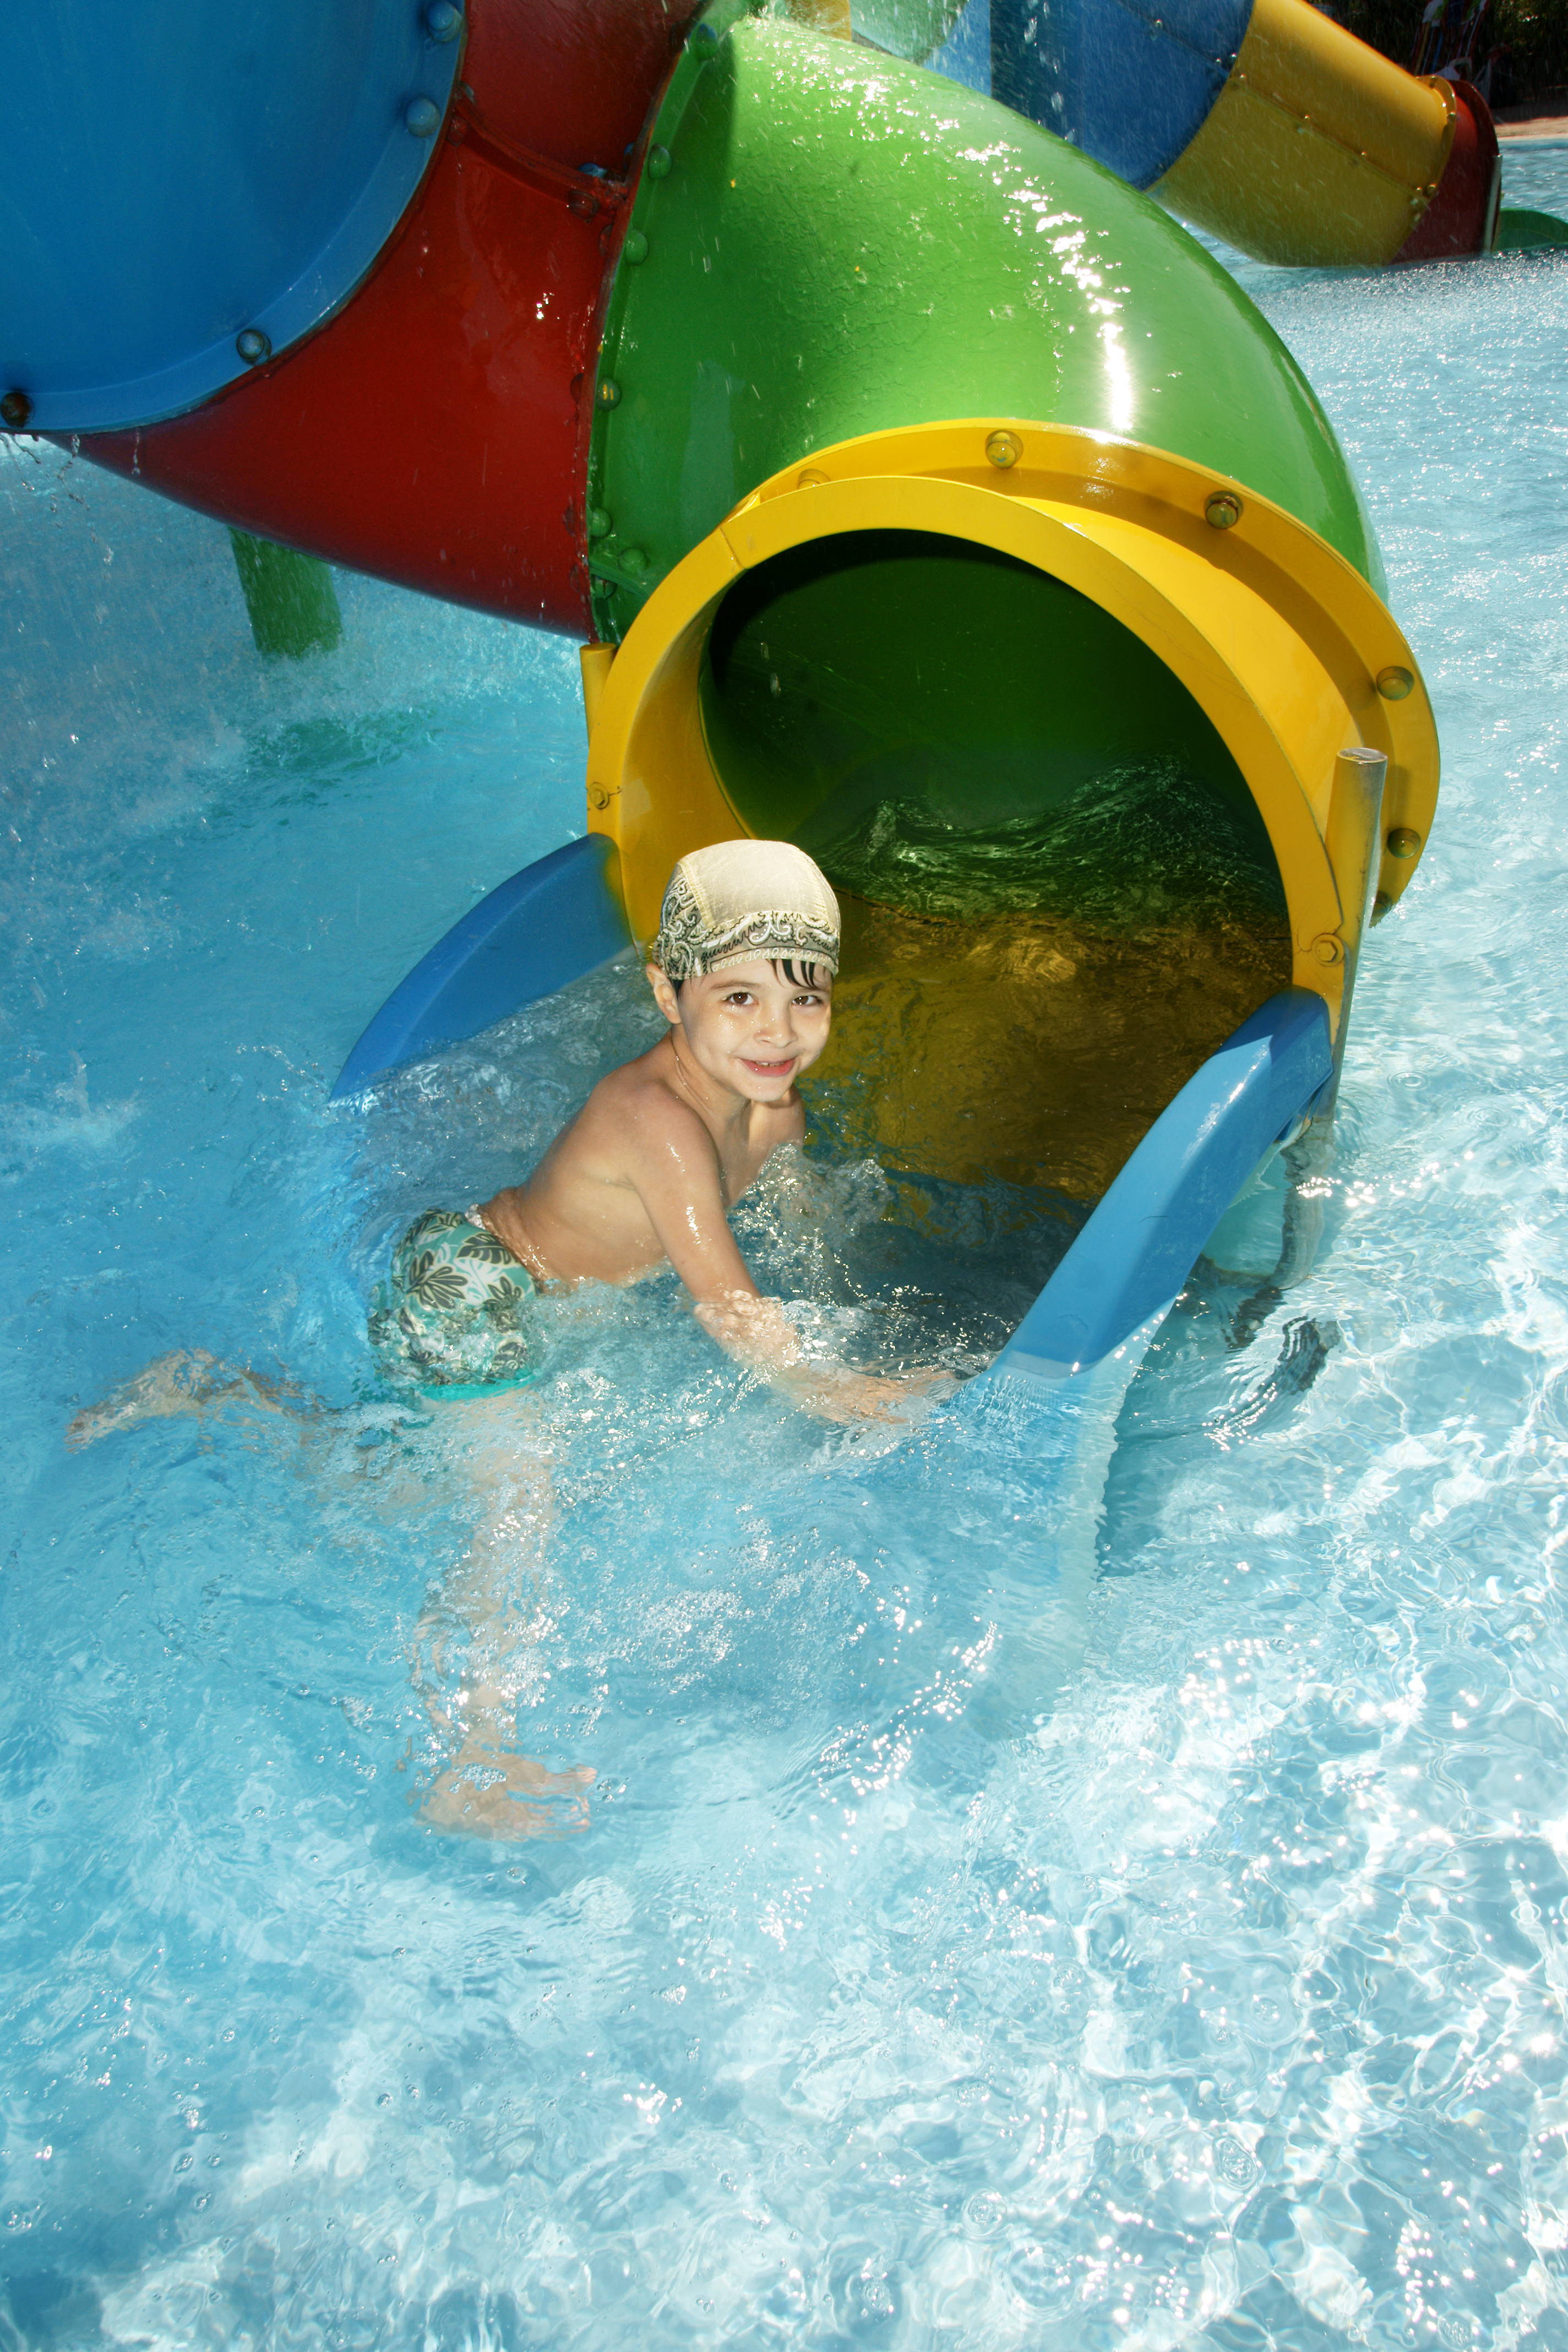 Ein kleiner Junge beim Schwimmen | Quelle: Shutterstock